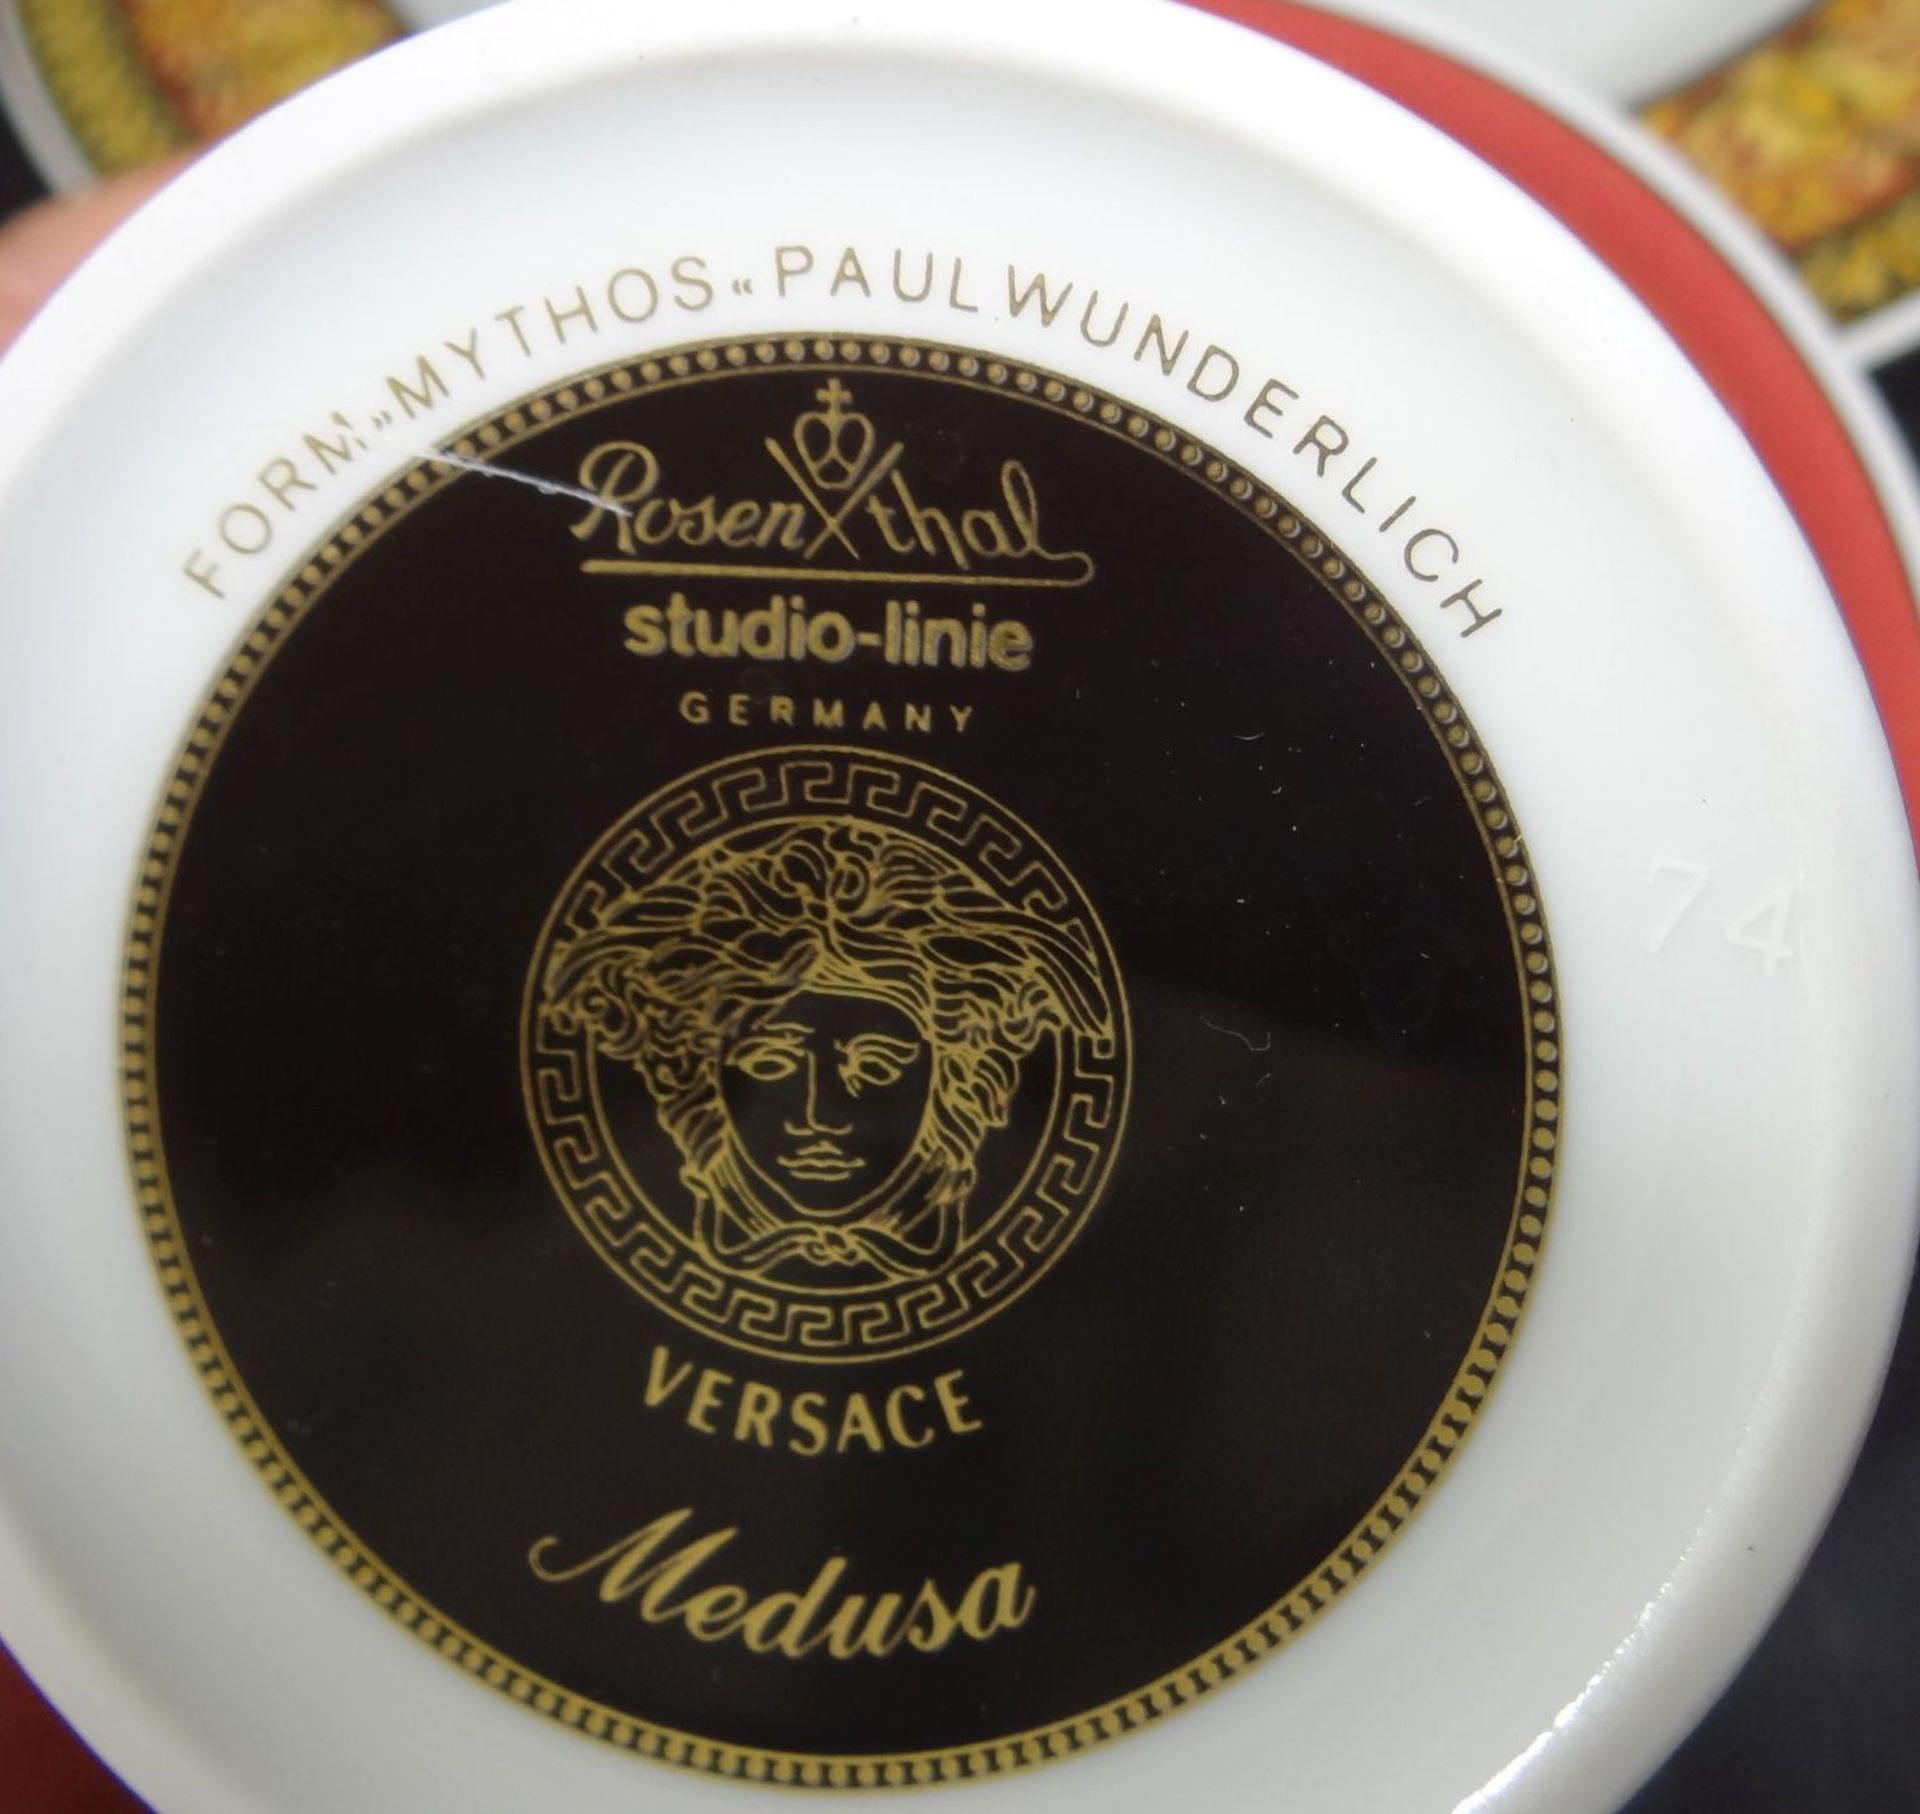 Kaffeegedeck von Rosenthal" Dekor Versace, Medusa, Form Mythos von Paul Wunderlich, gut erhalten - Bild 5 aus 5